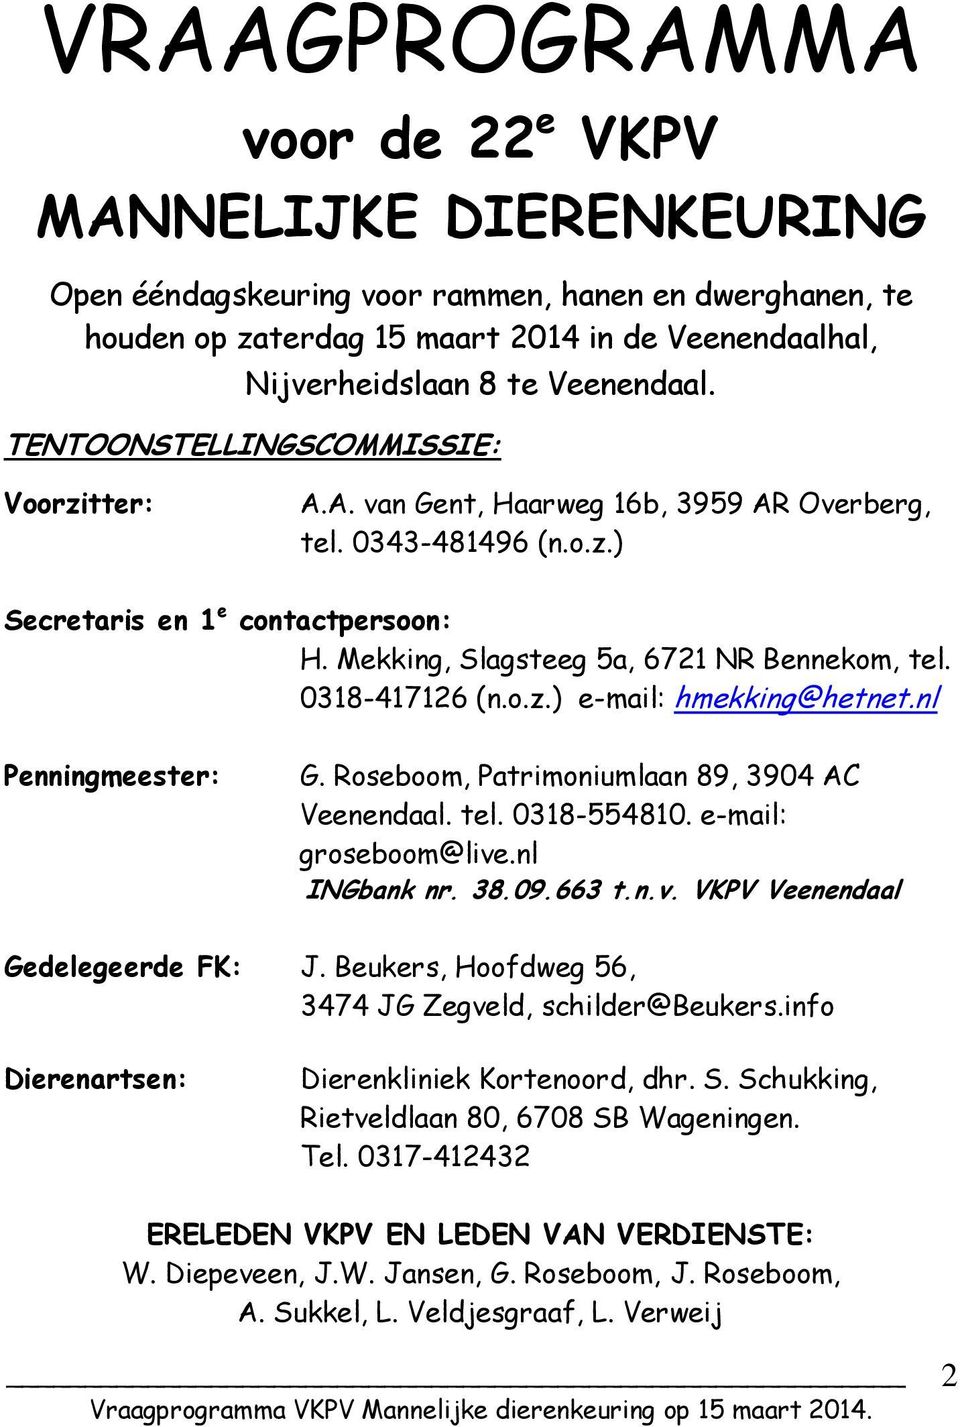 Mekking, Slagsteeg 5a, 6721 NR Bennekom, tel. 0318-417126 (n.o.z.) e-mail: hmekking@hetnet.nl Penningmeester: G. Roseboom, Patrimoniumlaan 89, 3904 AC Veenendaal. tel. 0318-554810.